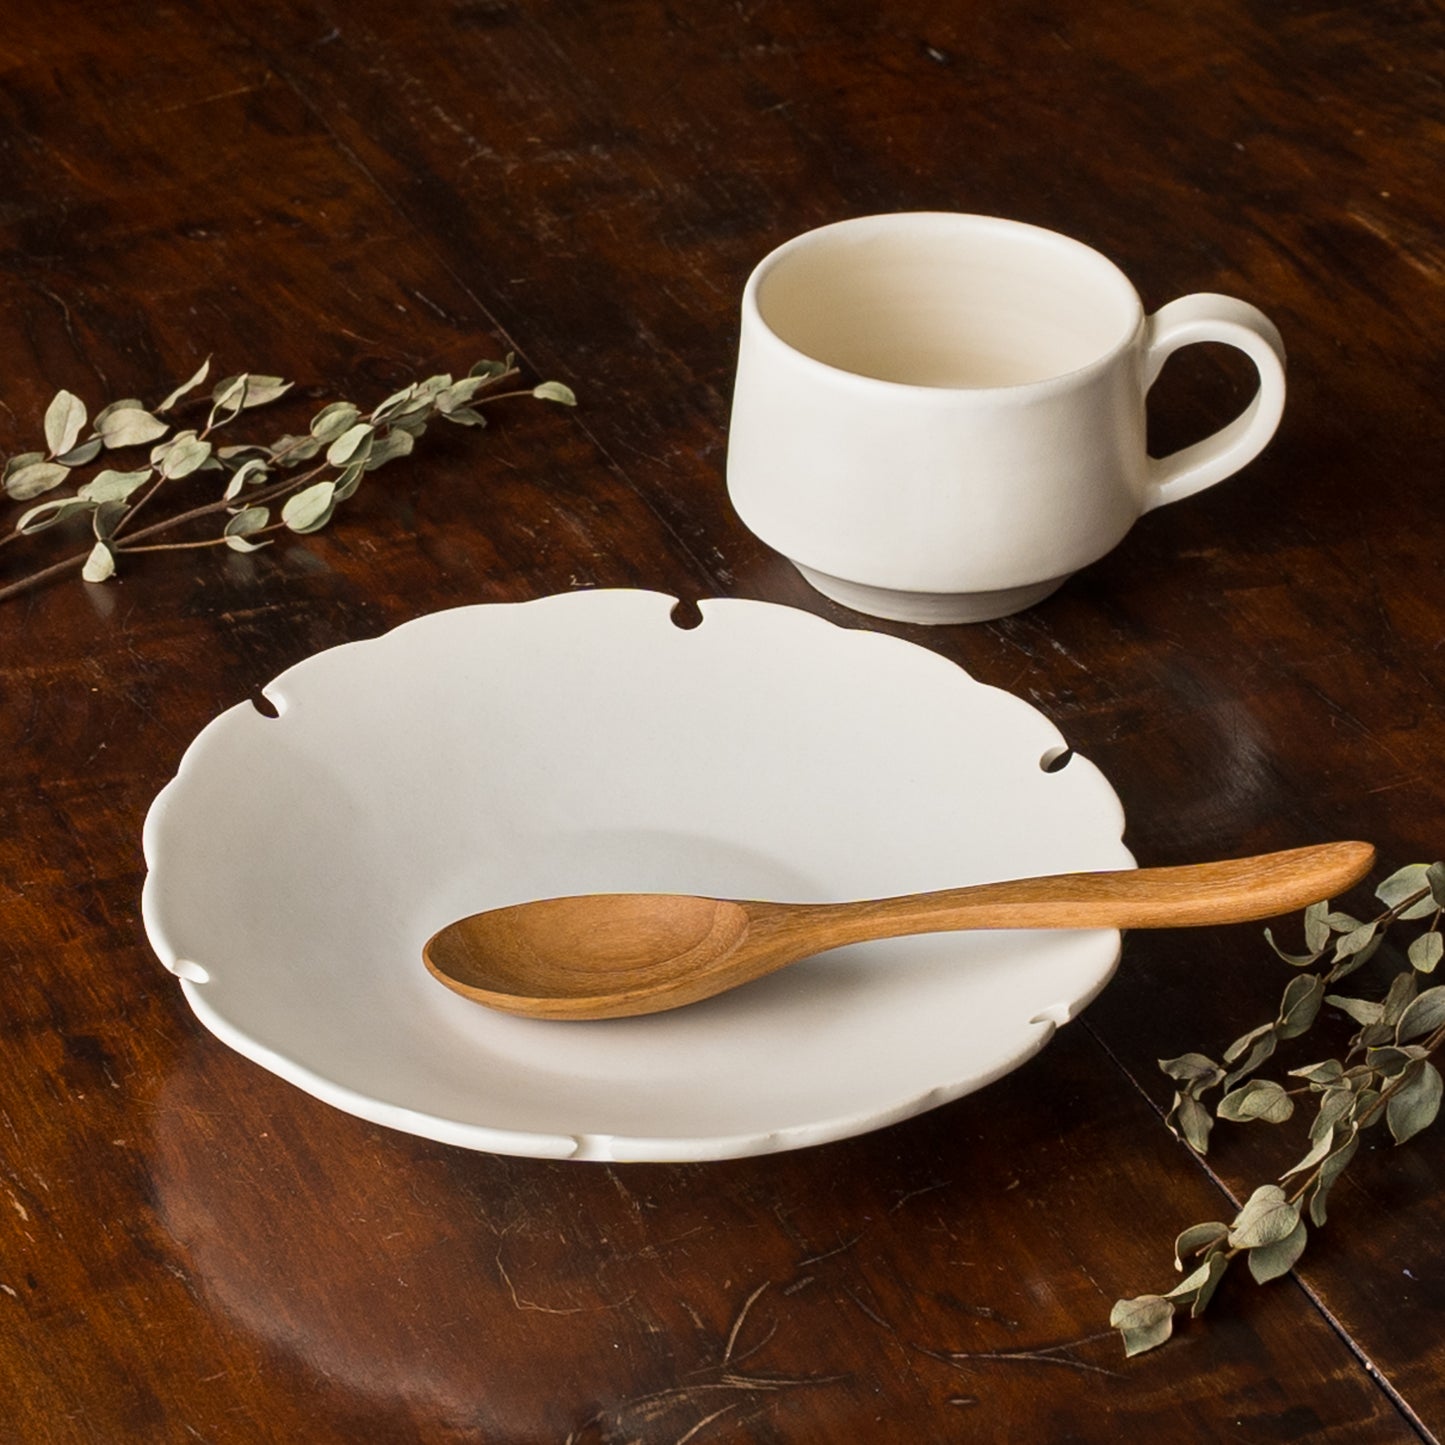 ワンプレートご飯をゆっくり楽しめるyoshida potteryの雪輪皿とコーヒーカップ